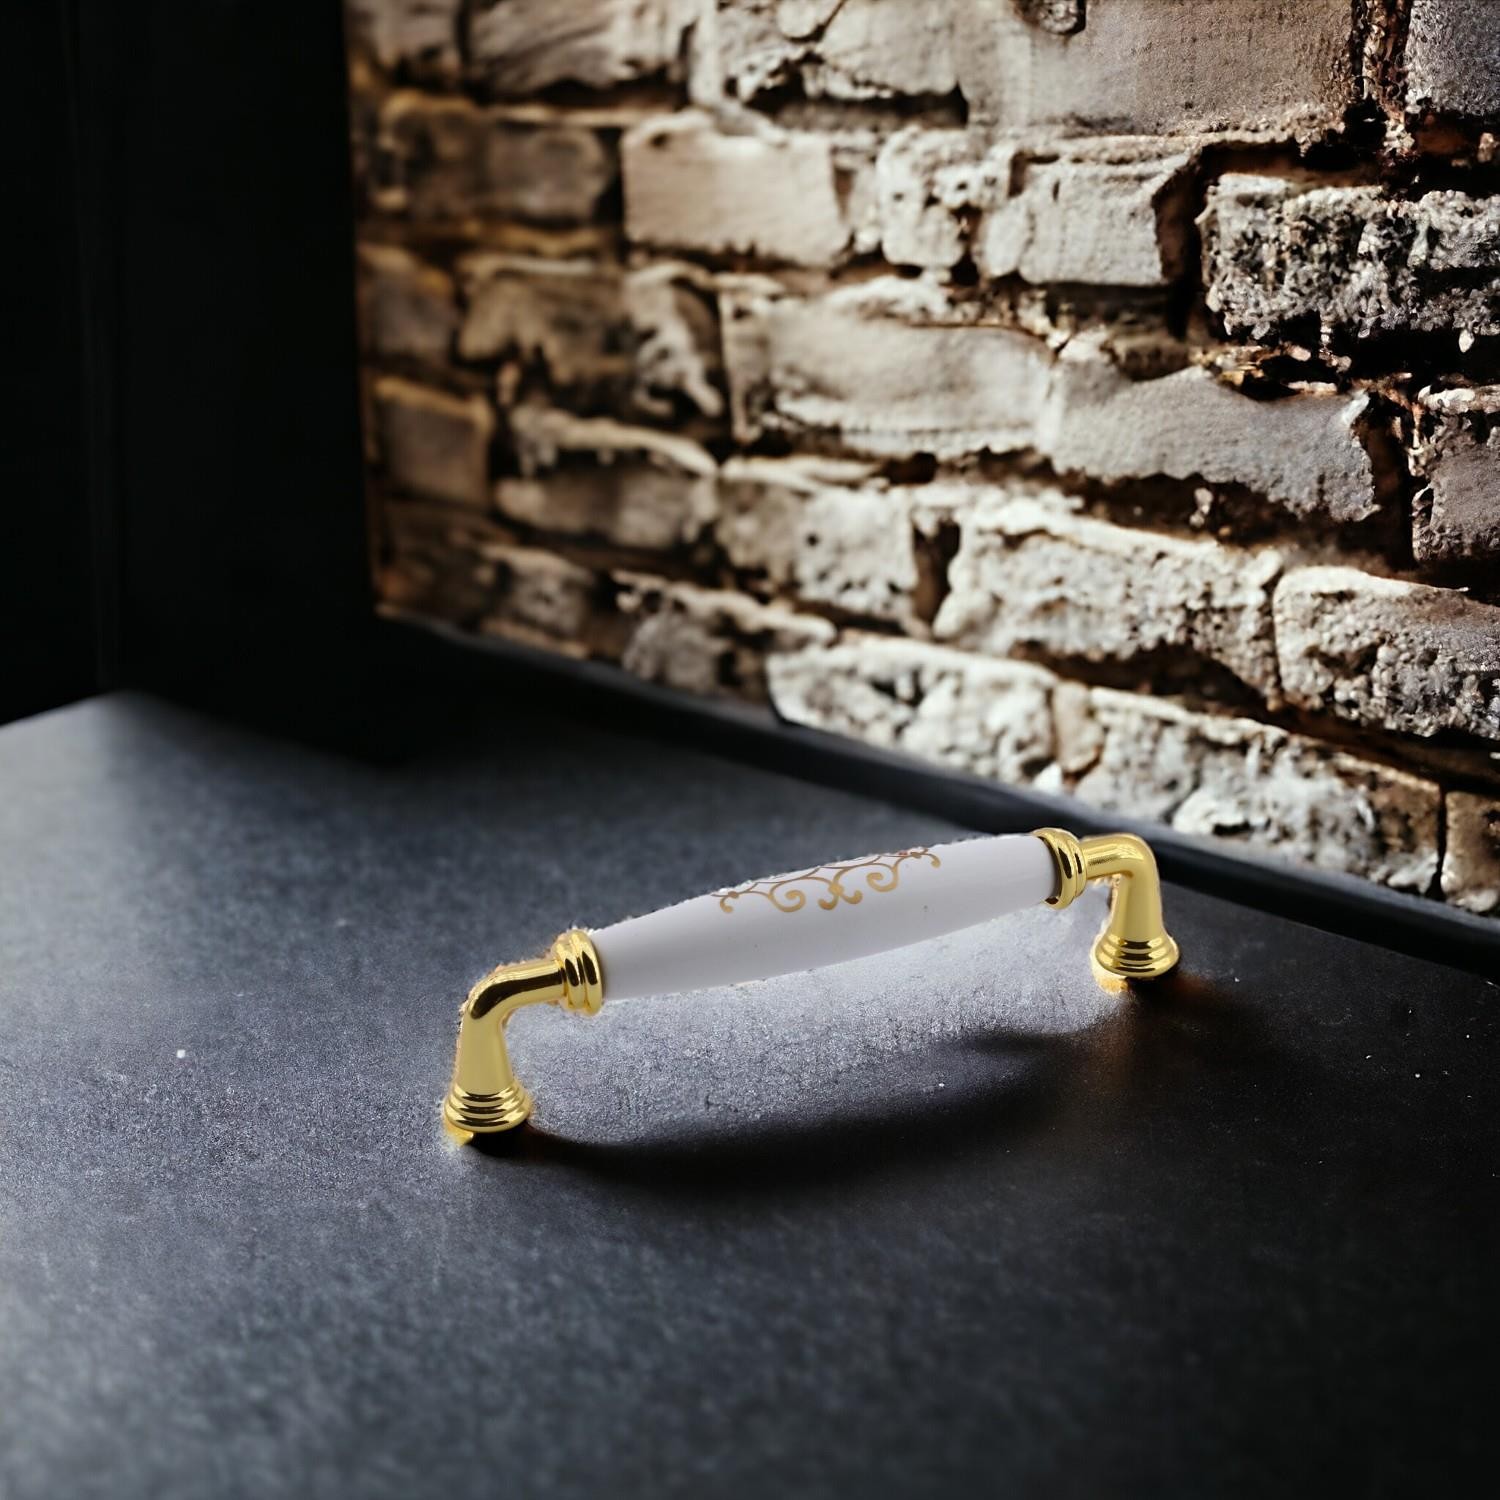 Sude Porselen Görünümlü Kulp Mobilya Mutfak Dolabı Çekmece Dolap Kapak Kulpları Gold Altın 128 mm